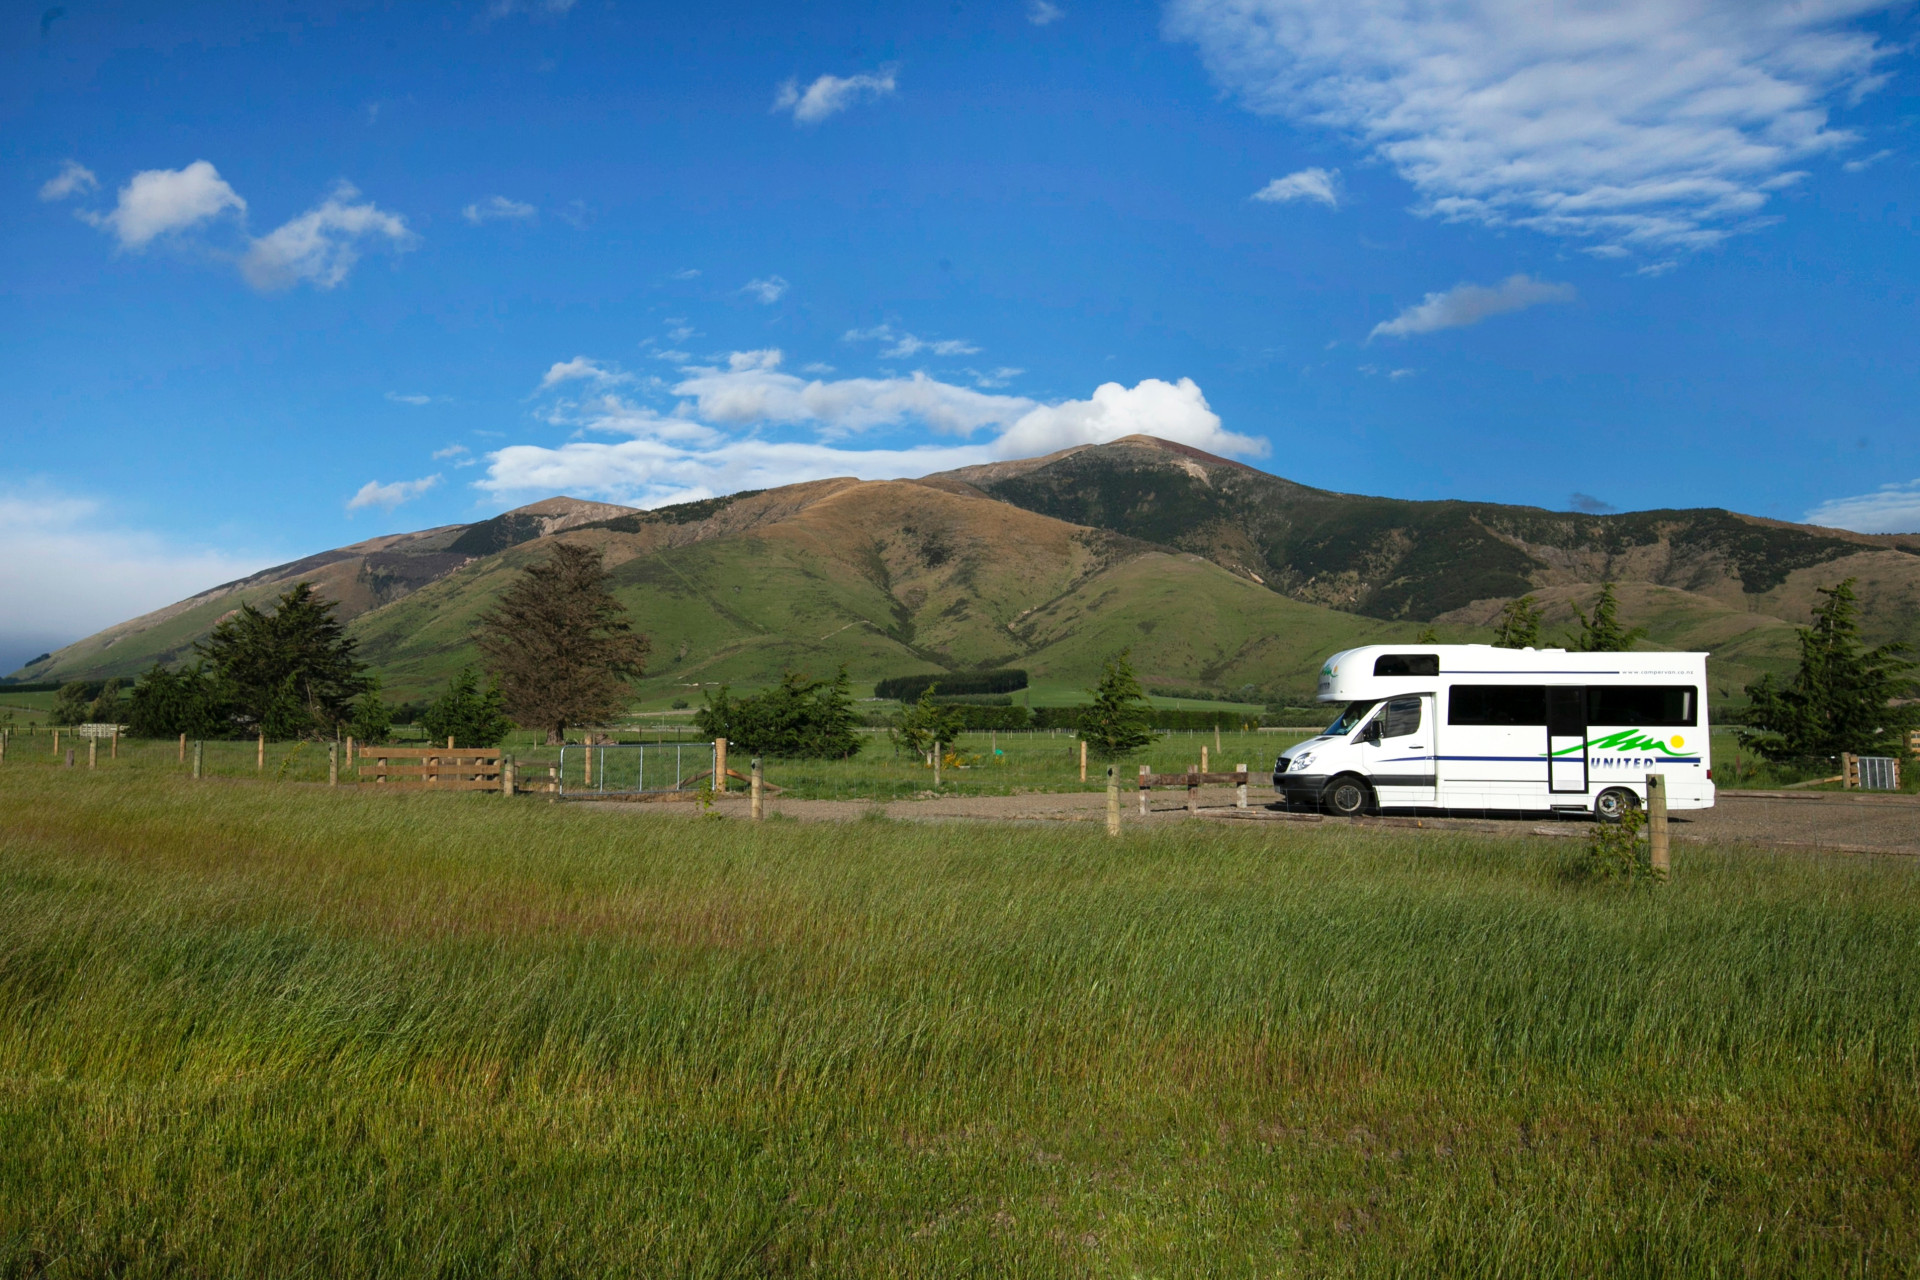 Premiers pas en camping: ce que vous devez emporter dans votre caravane